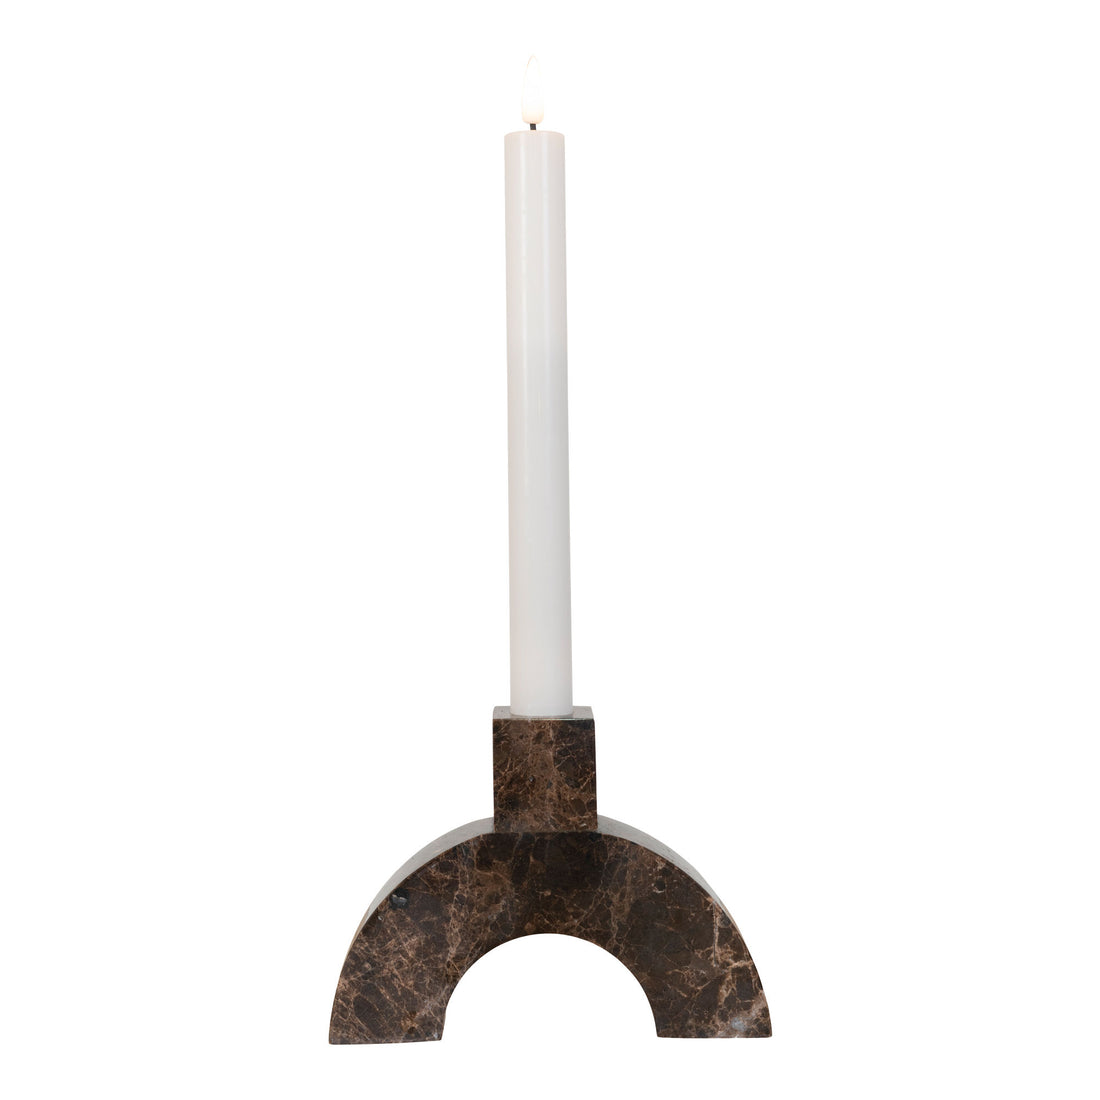 Candlestick - Candlestick em mármore, marrom, 15x3.5x11 cm - 1 - PCs